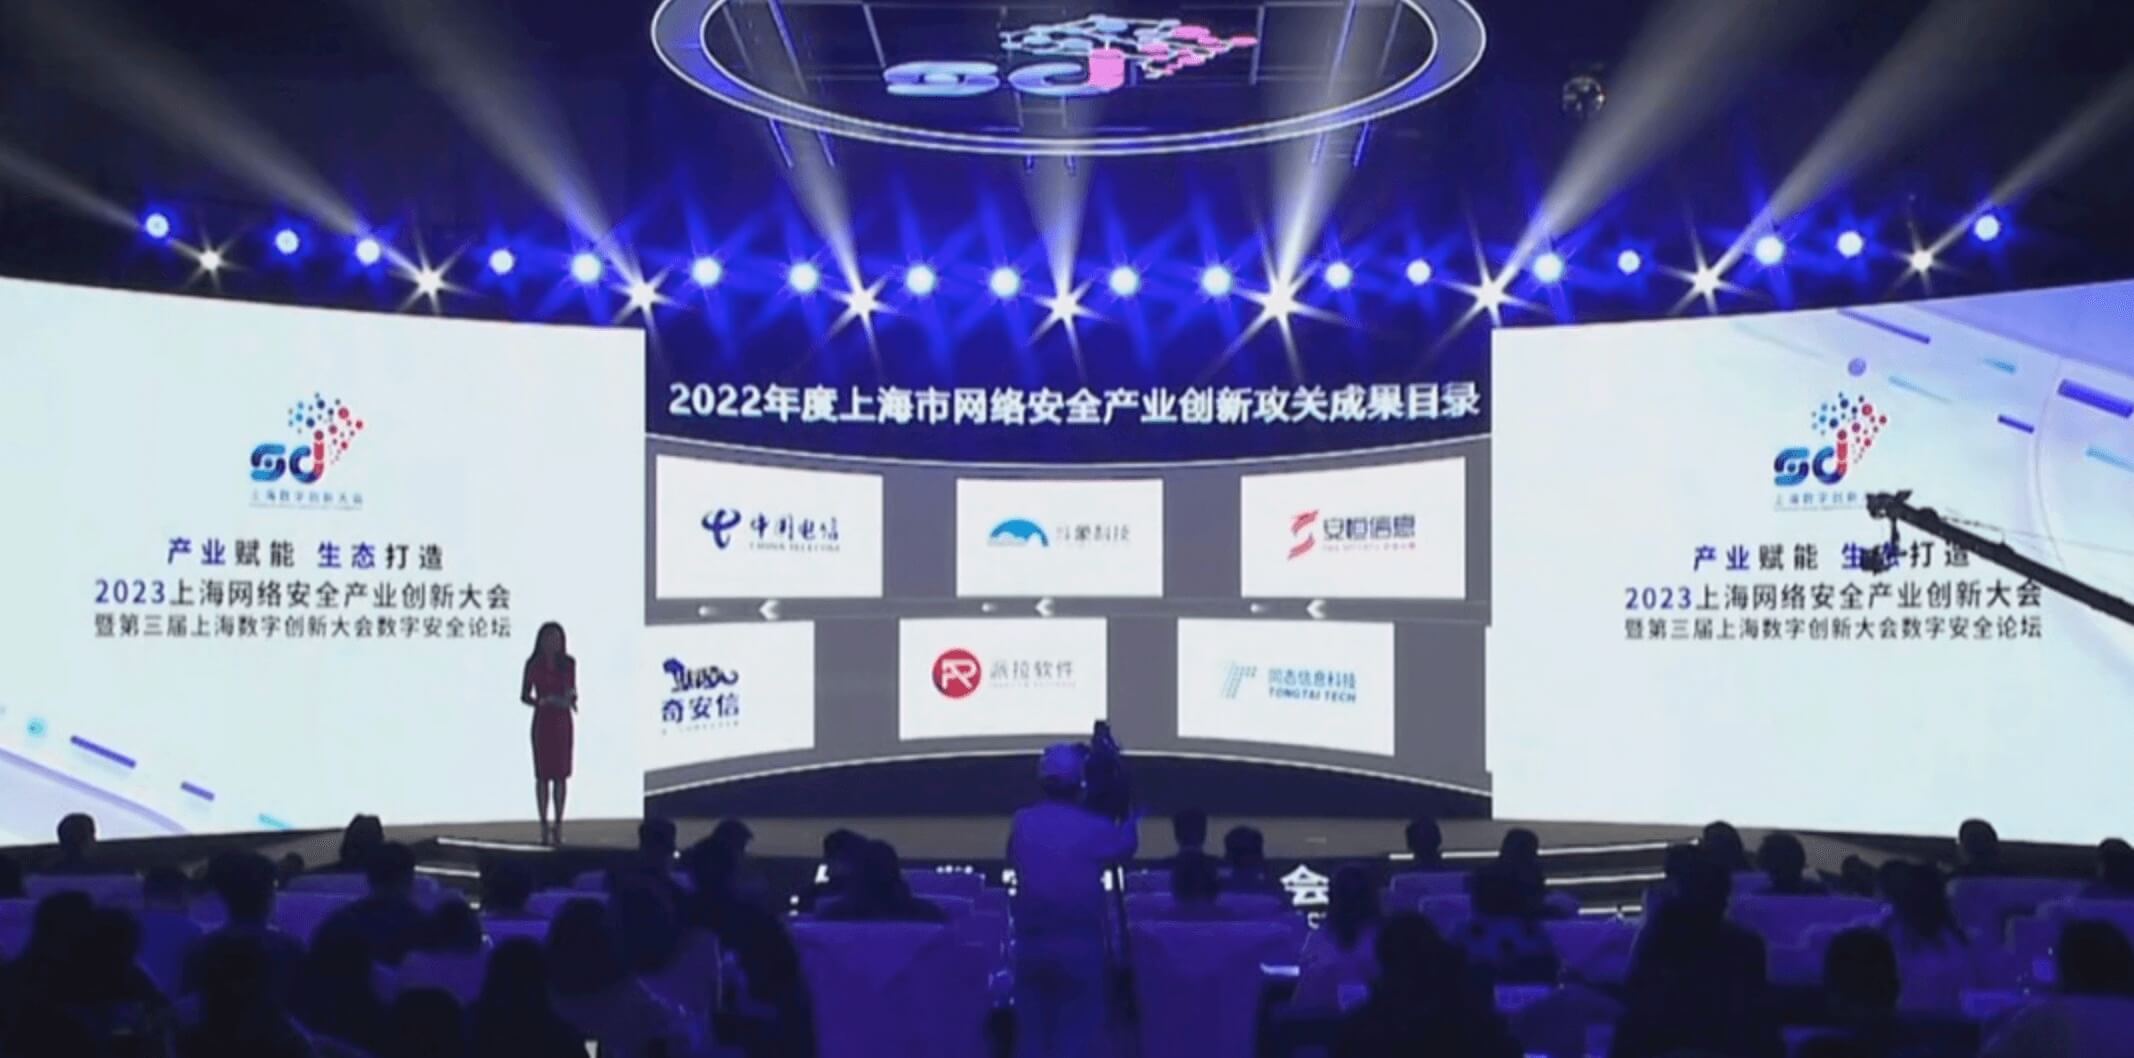 派拉软件入选上海市2022年重点行业安全优秀解决方案榜单